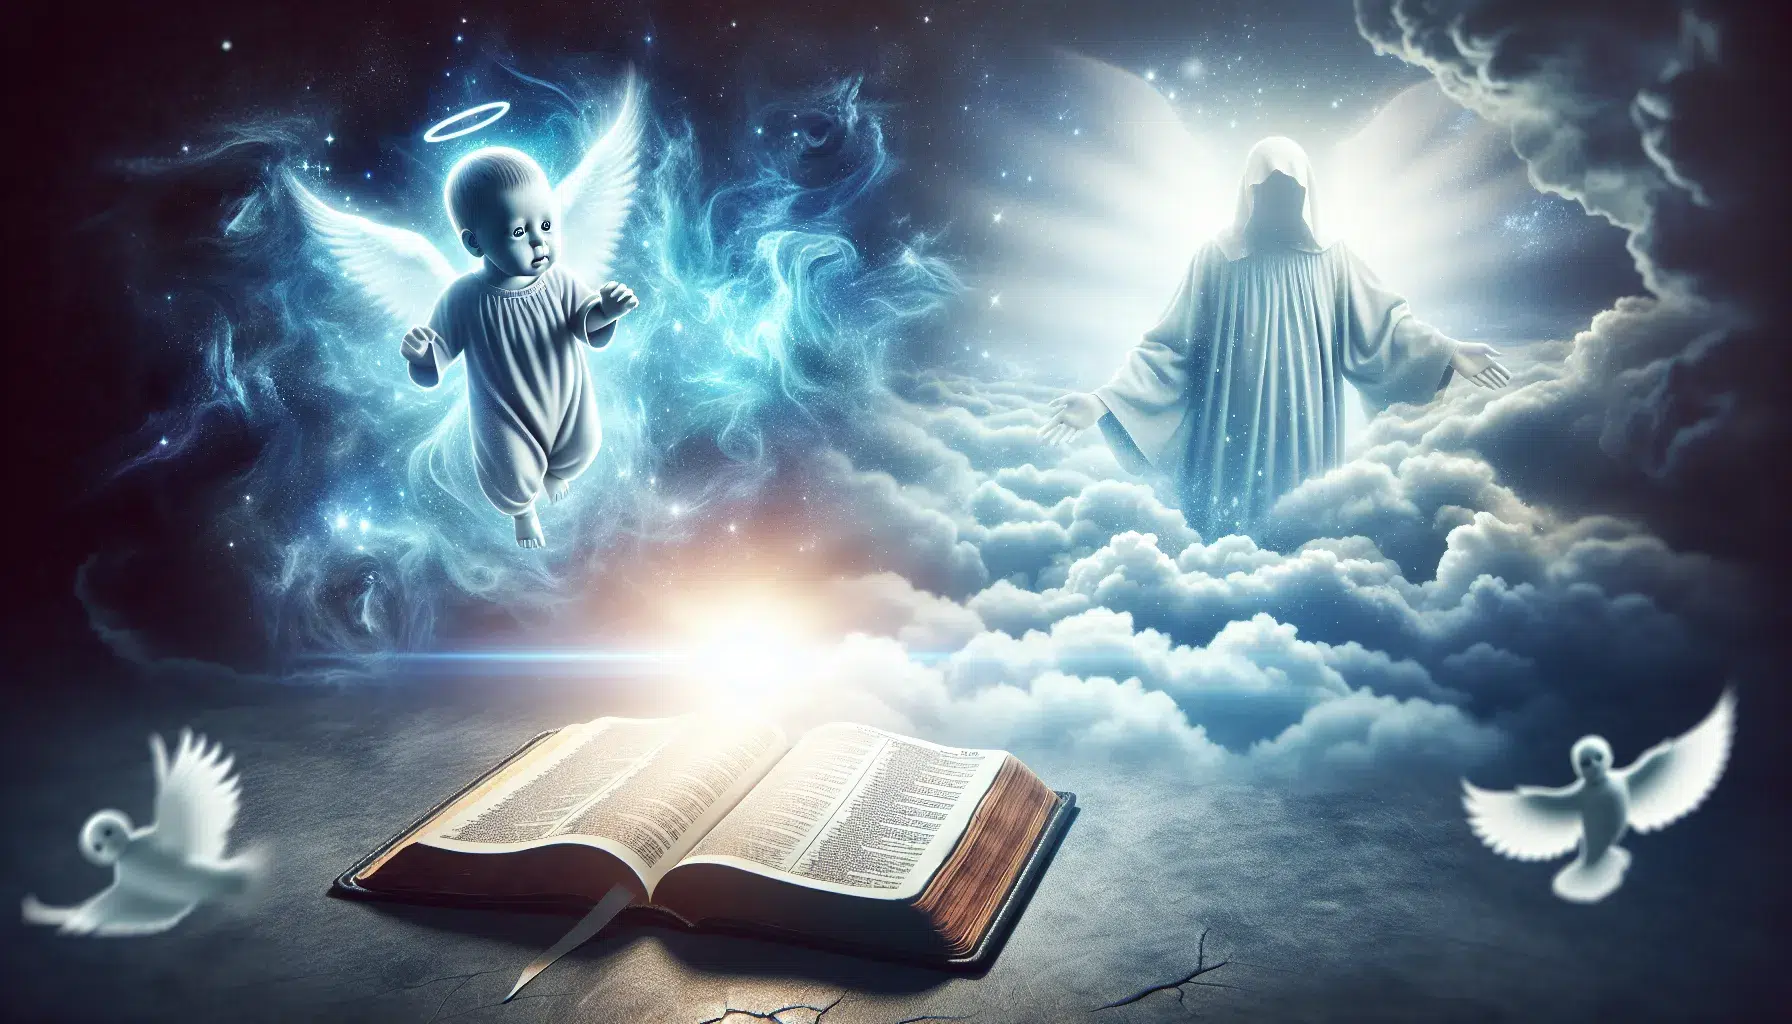 Imagen relacionada con el artículo sobre la creencia de que las almas de los bebés abortados van al cielo según la Biblia.